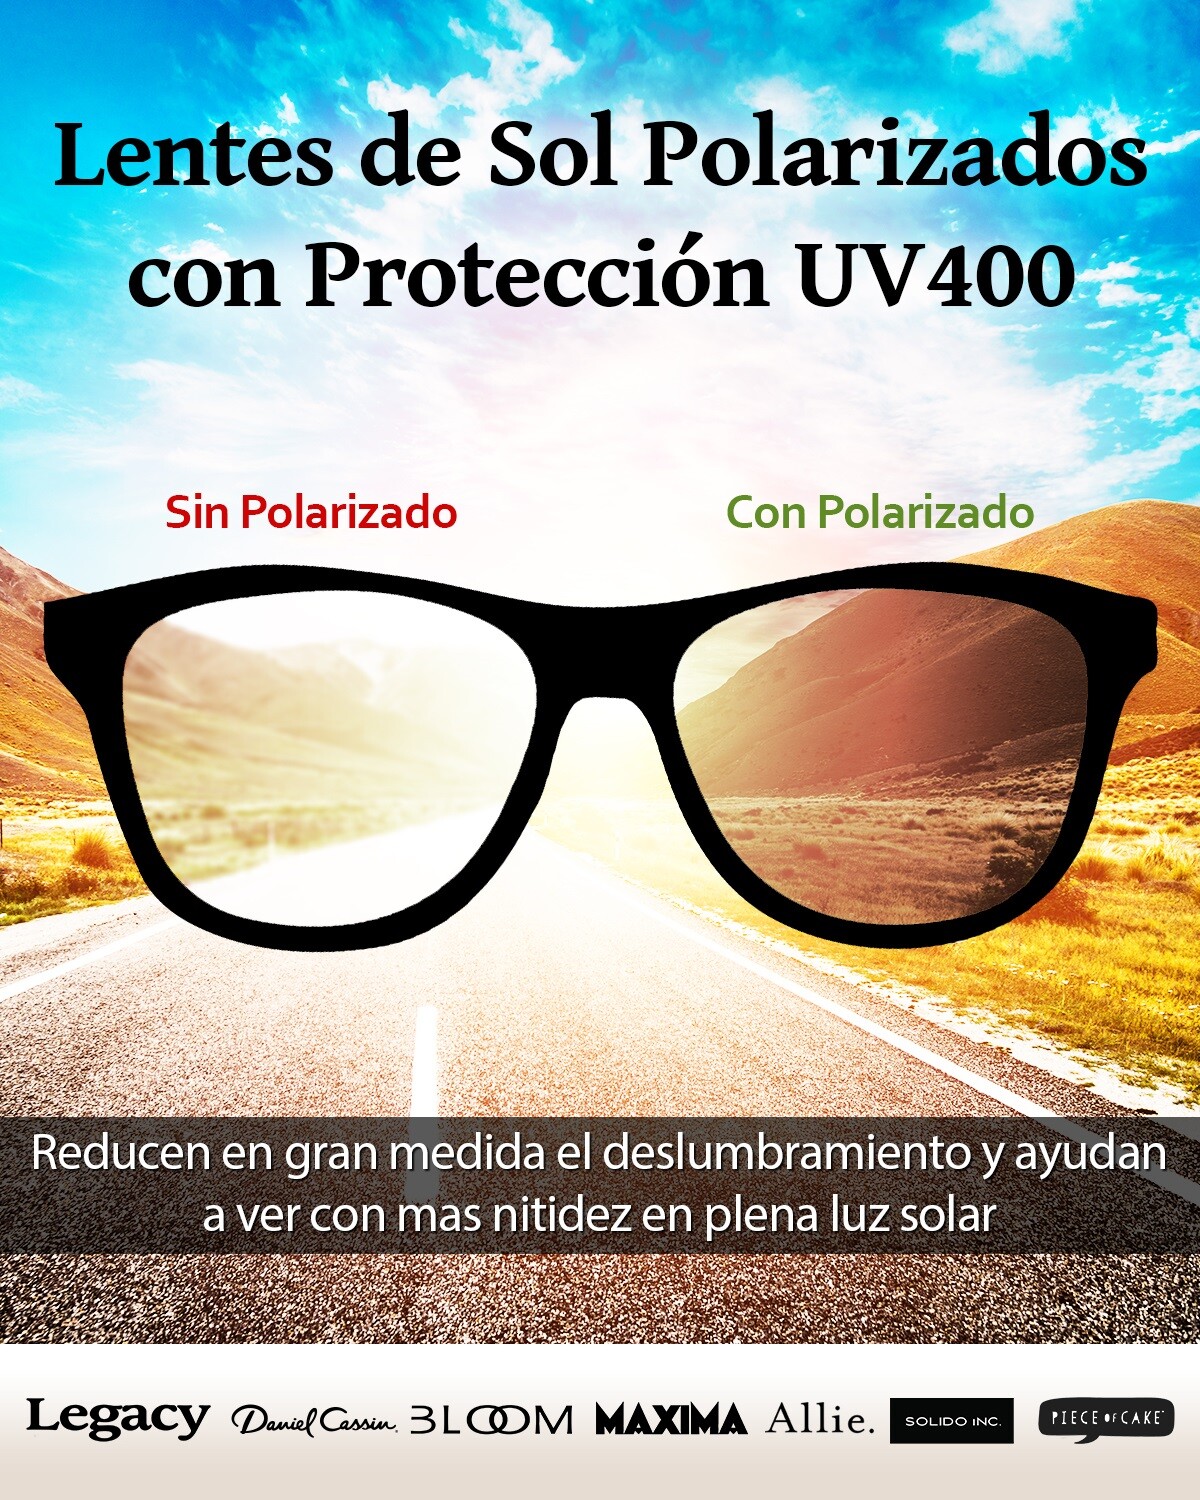 Lentes de sol polarizados UV400